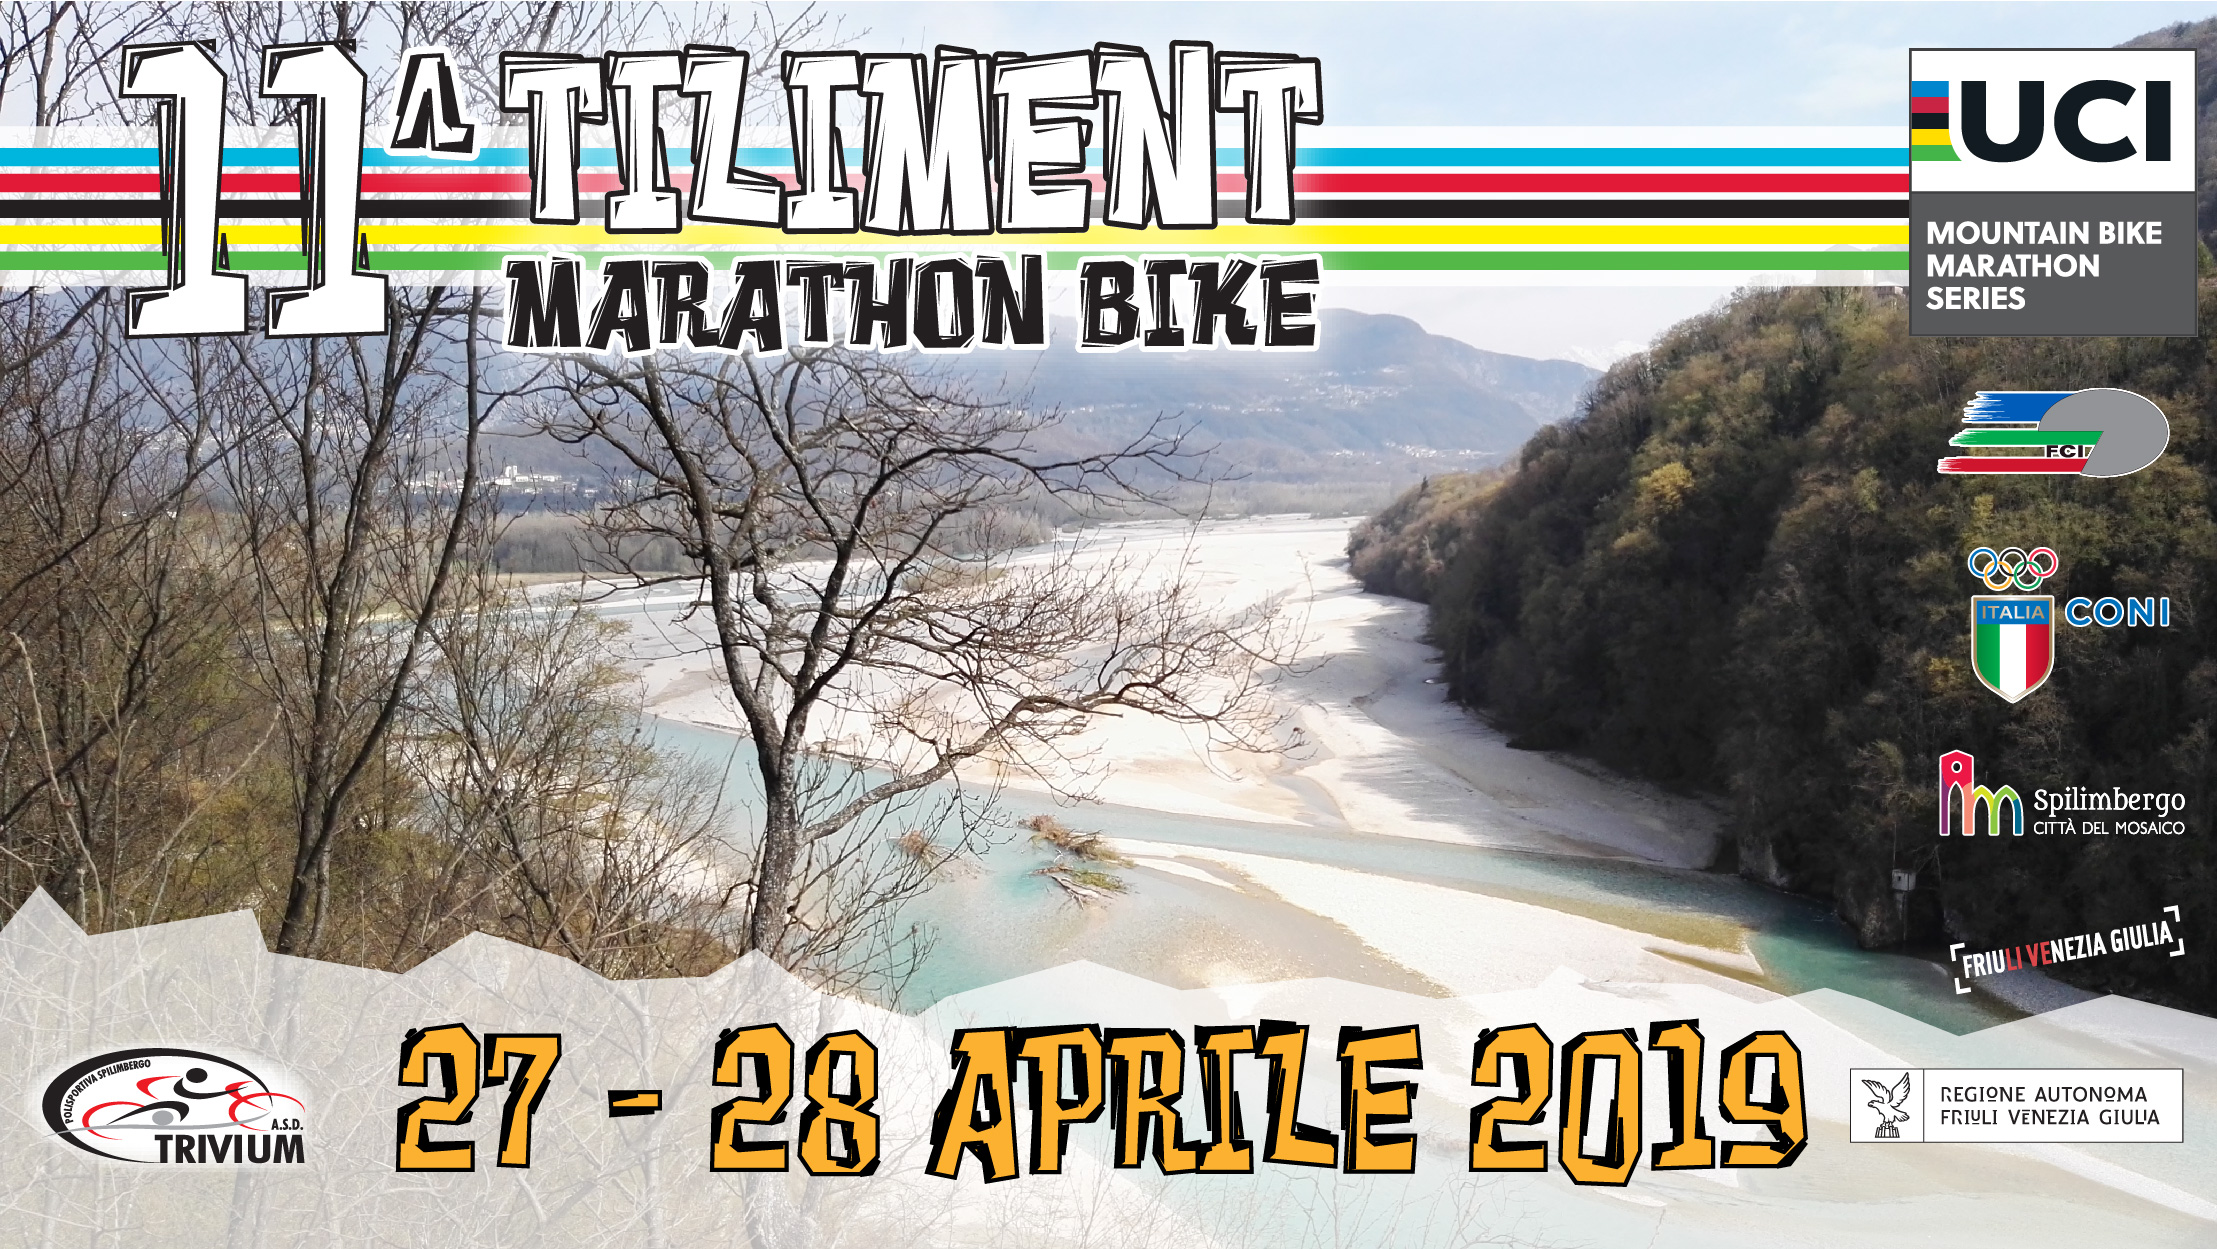 8/3/19 Tiliment Marathon Bike: iscizioni aperte.